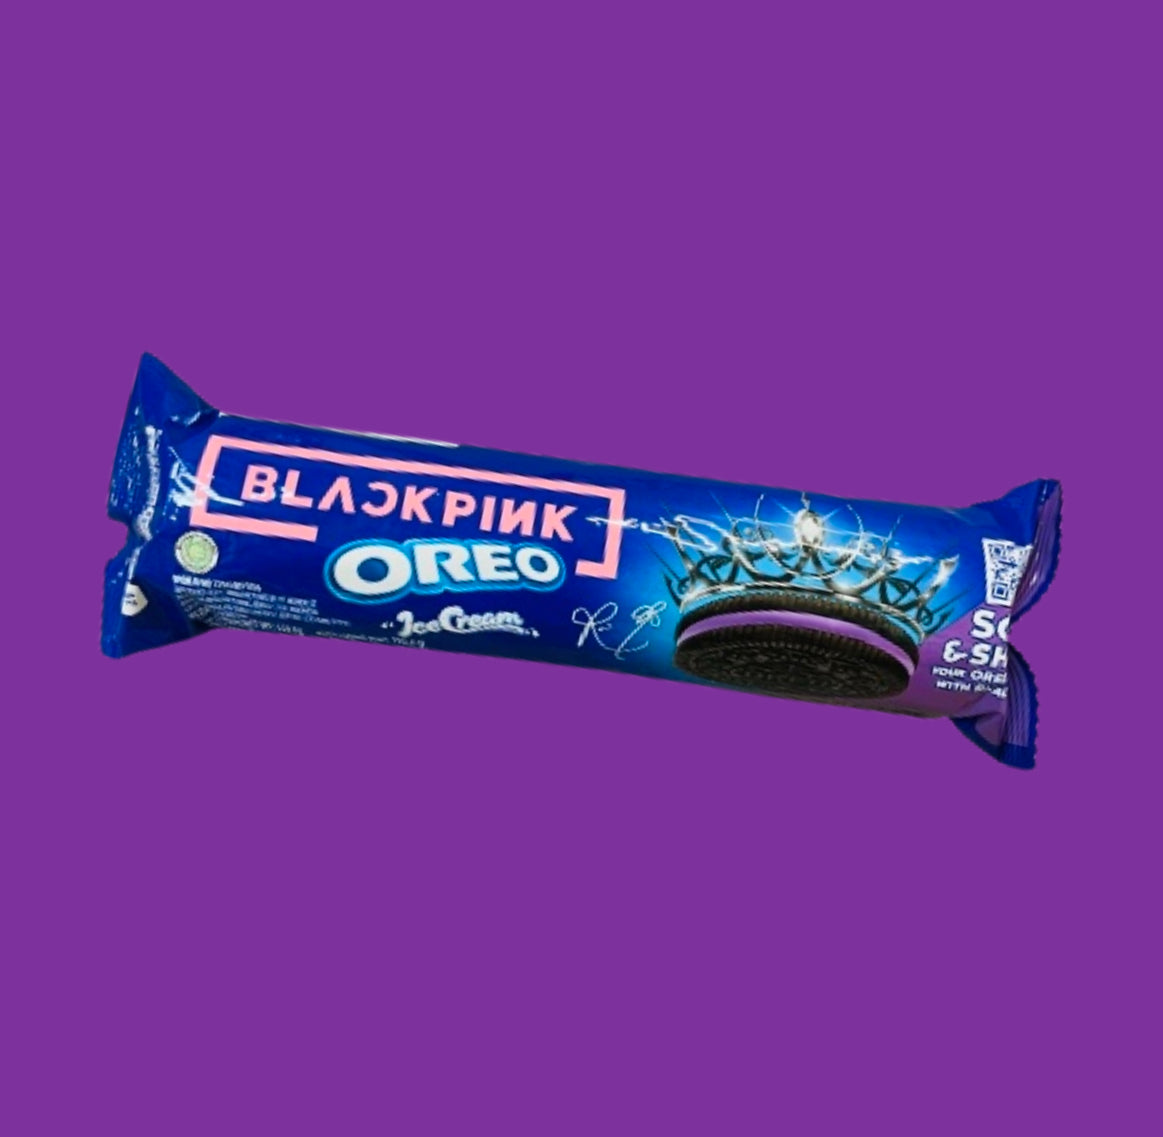 Oréo x blackpink blue Berry Roll Remix ice cream